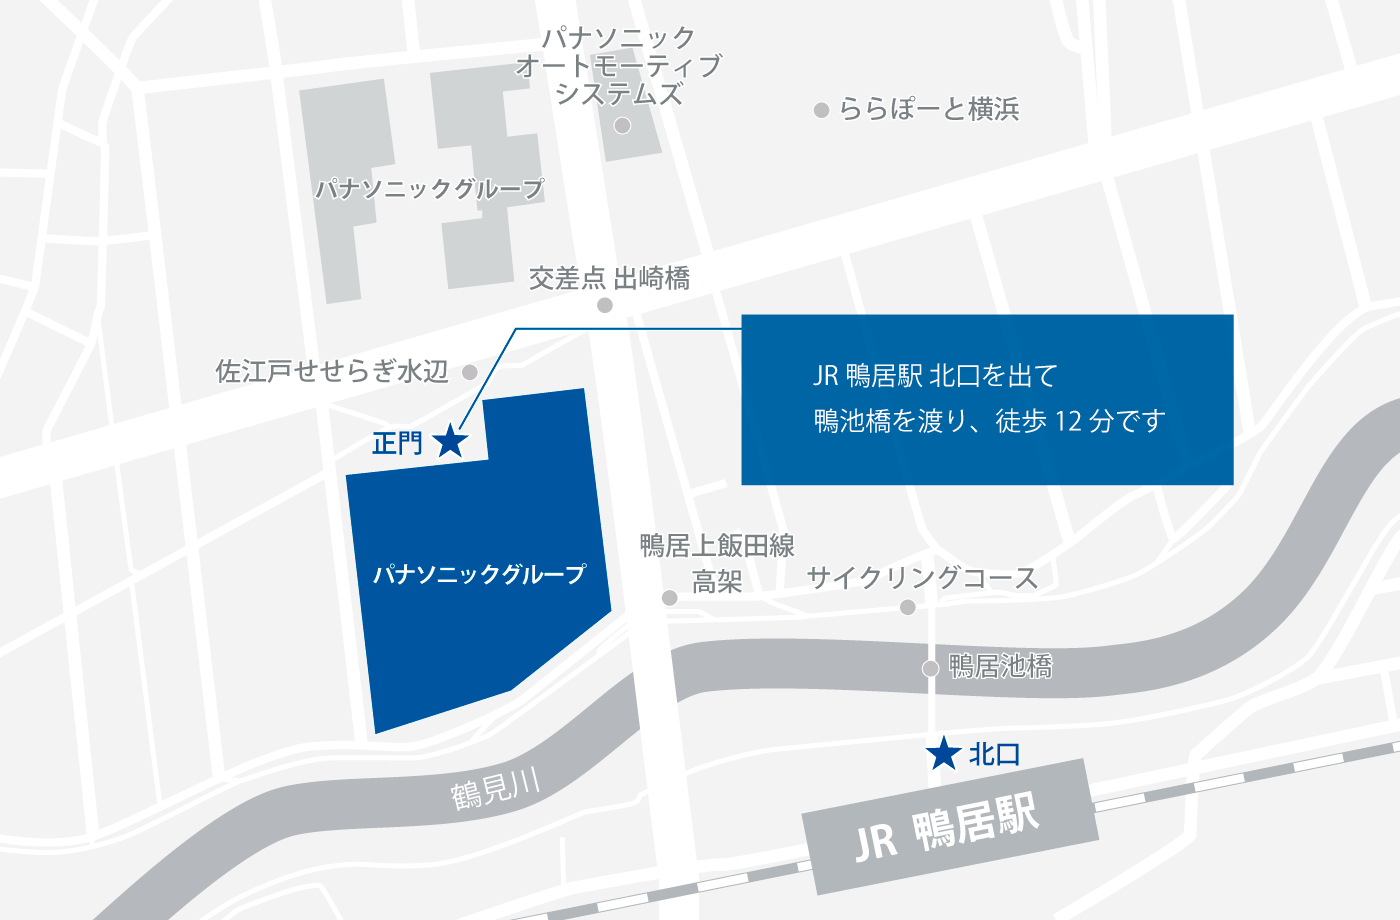 横浜拠点までの地図です。地図に続いて詳細。